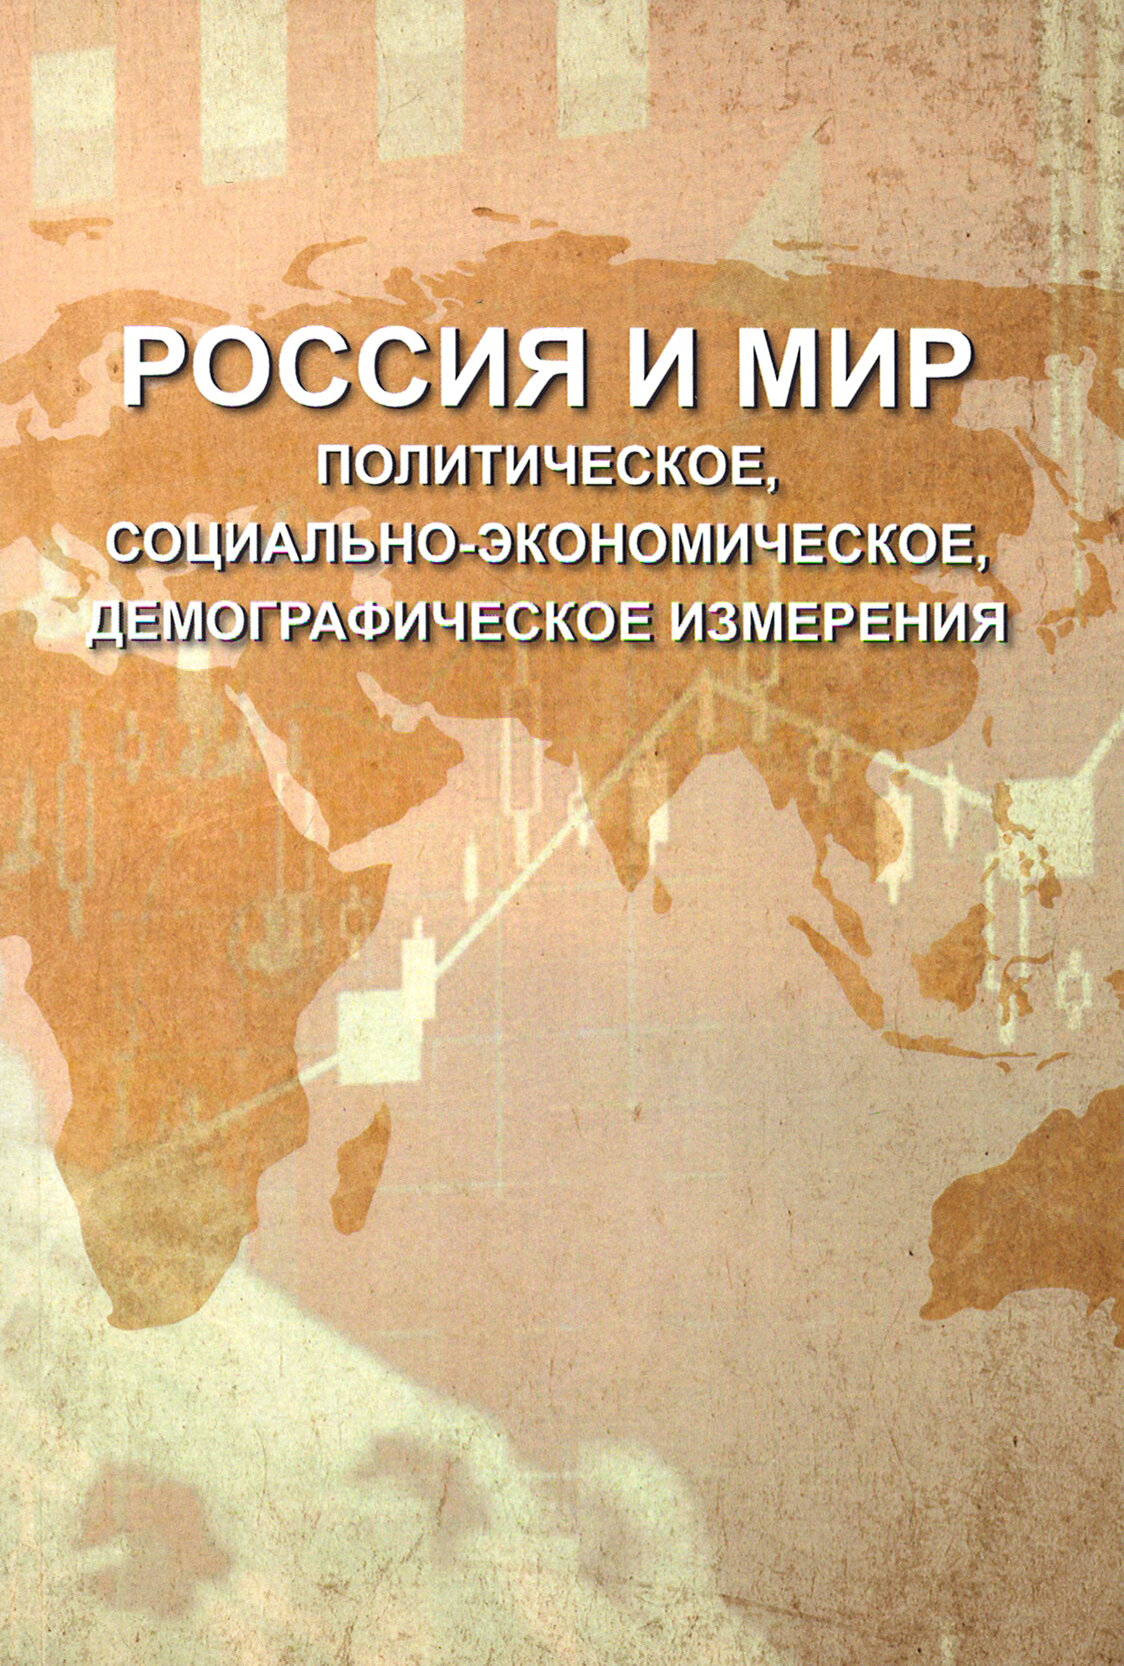 Россия и мир. Политическое, социально-экономическое, демографическое измерения - фото №2